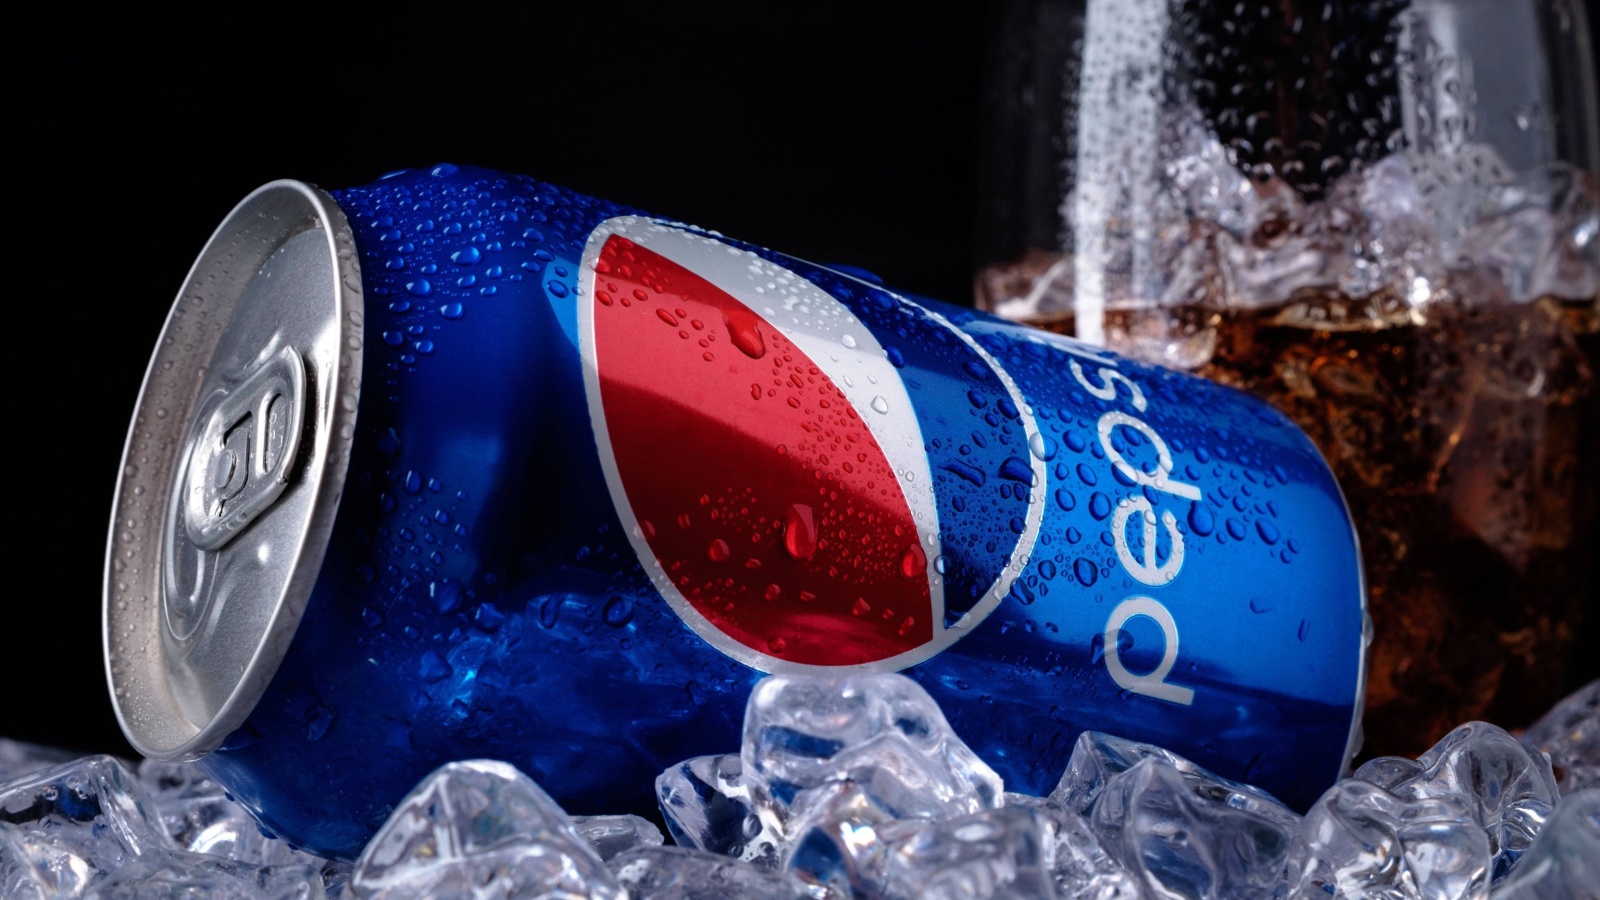 Sfondi Pepsi advertisement 1600x900